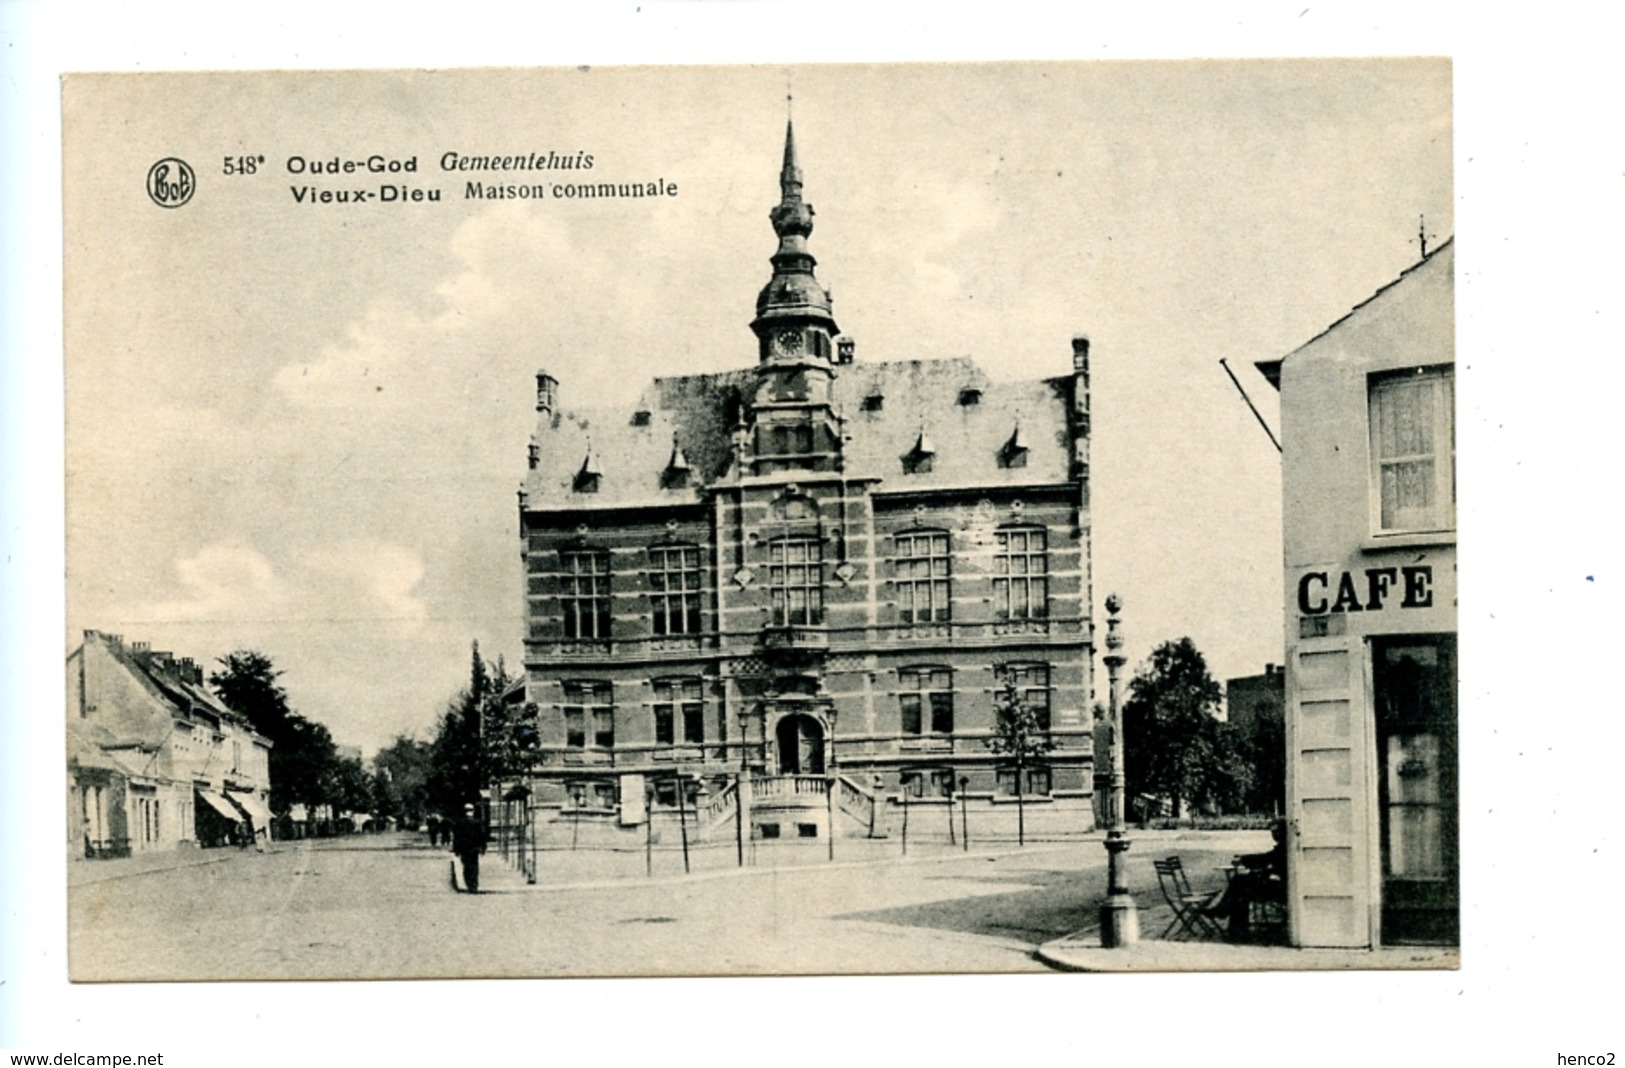 Oude-God Gemeentehuis - Vieux-Dieu Maison Communale - Mortsel